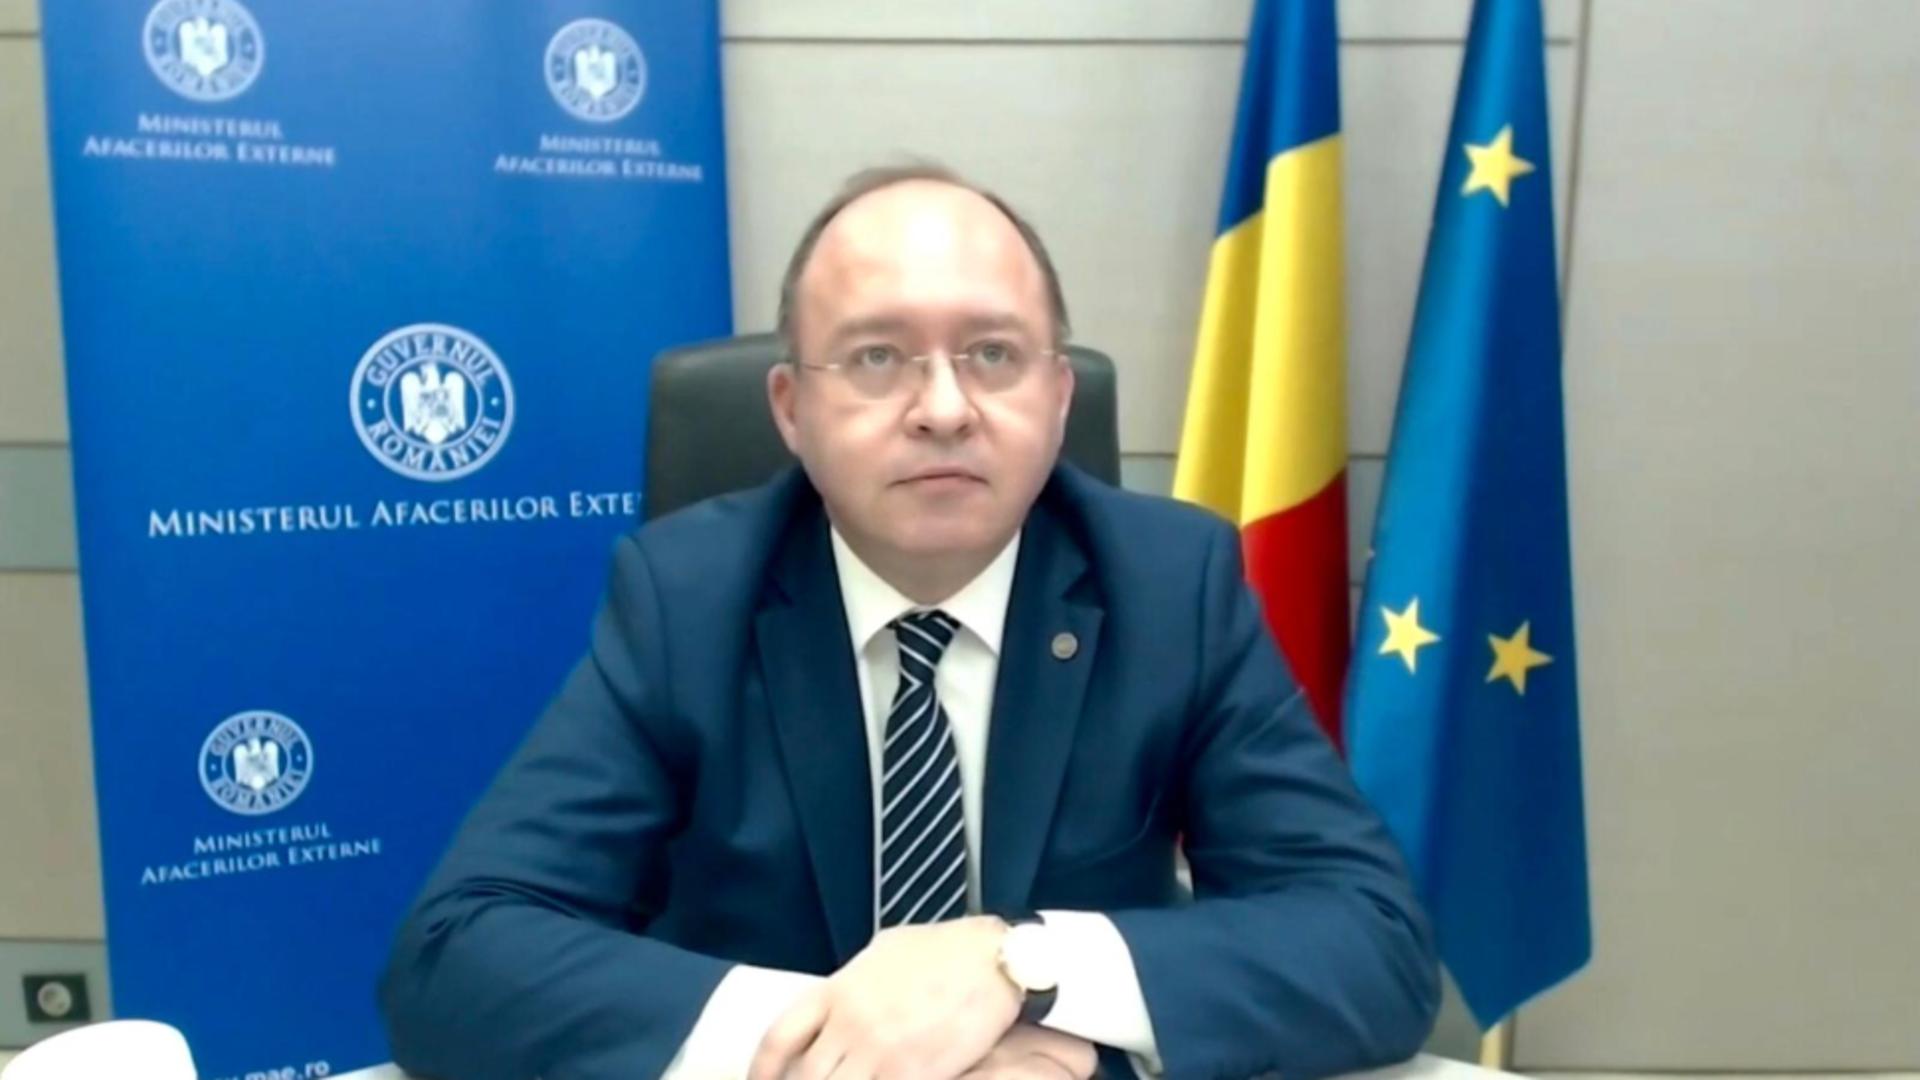 Ministrul român de externe spune că este o victorie a democrației și că a venit vremea reformei în Republica Moldova.